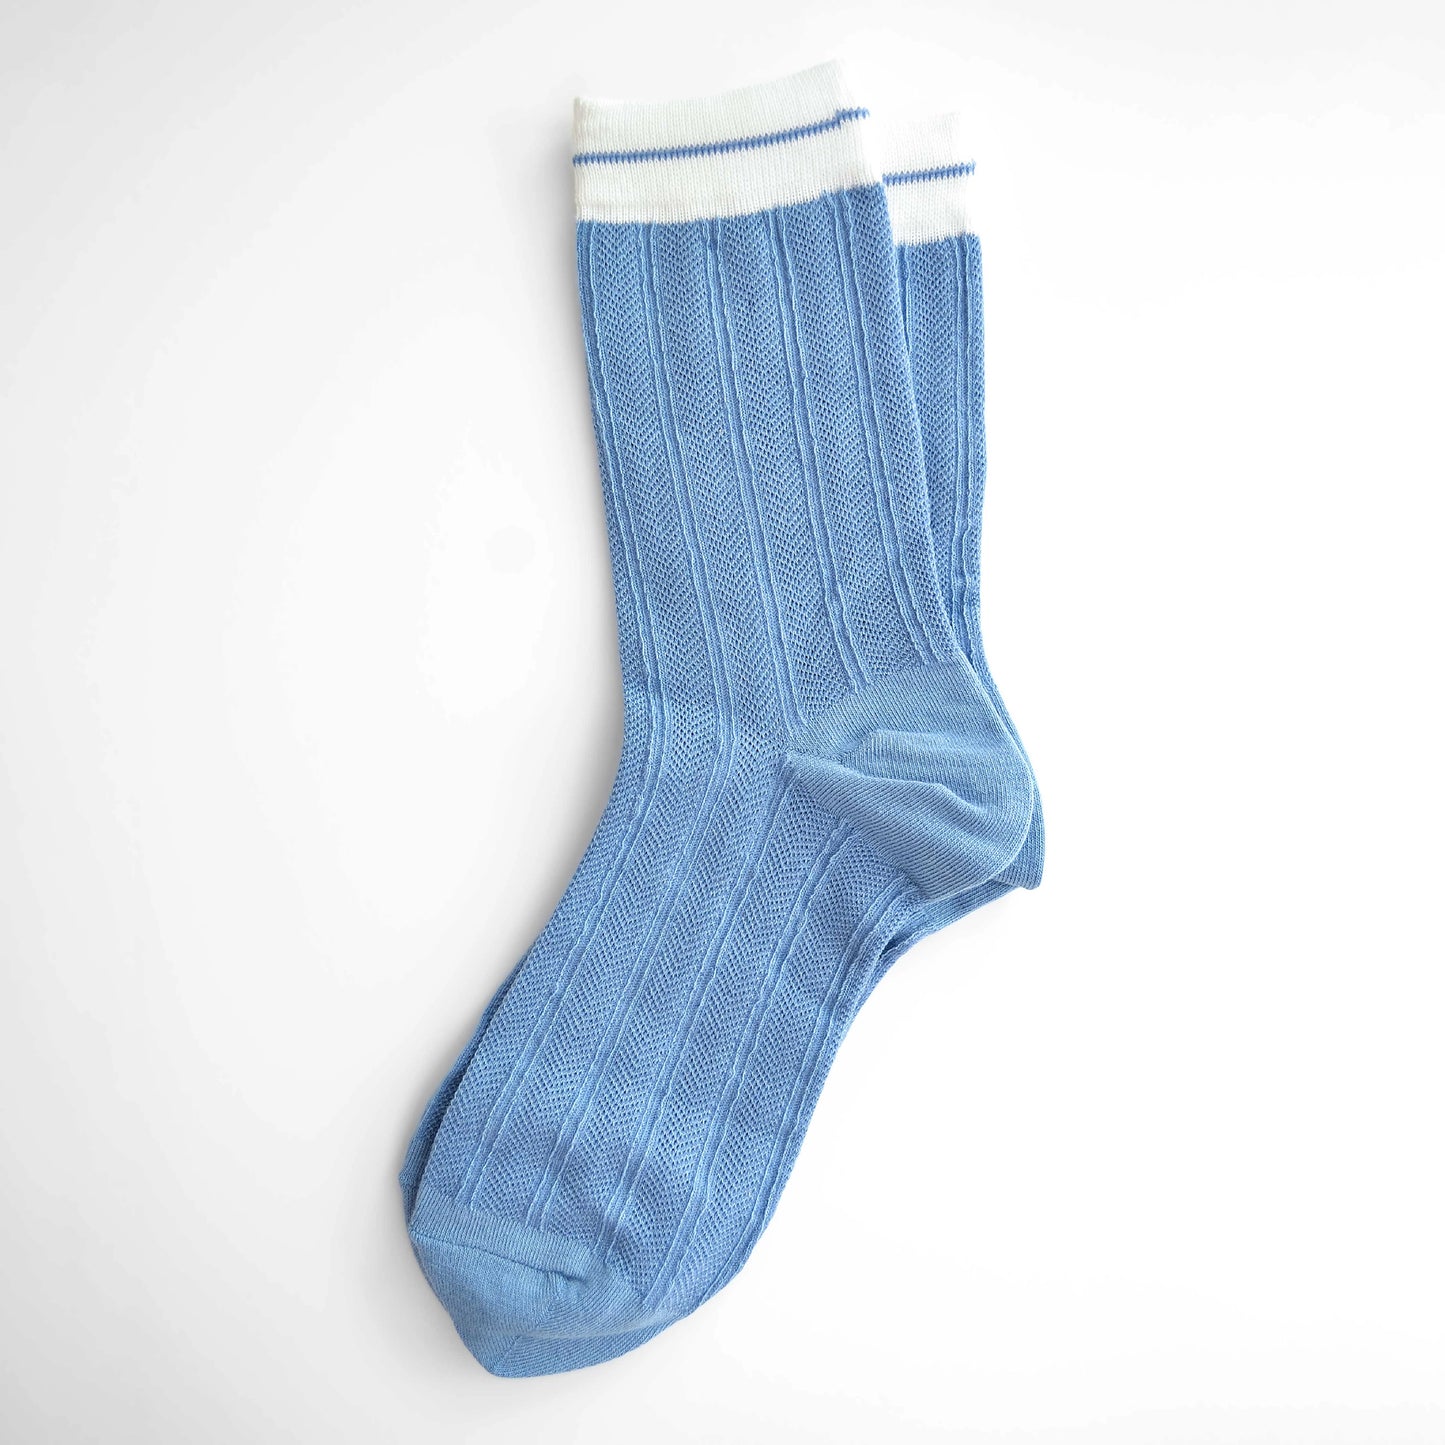 Union Socks - Blue